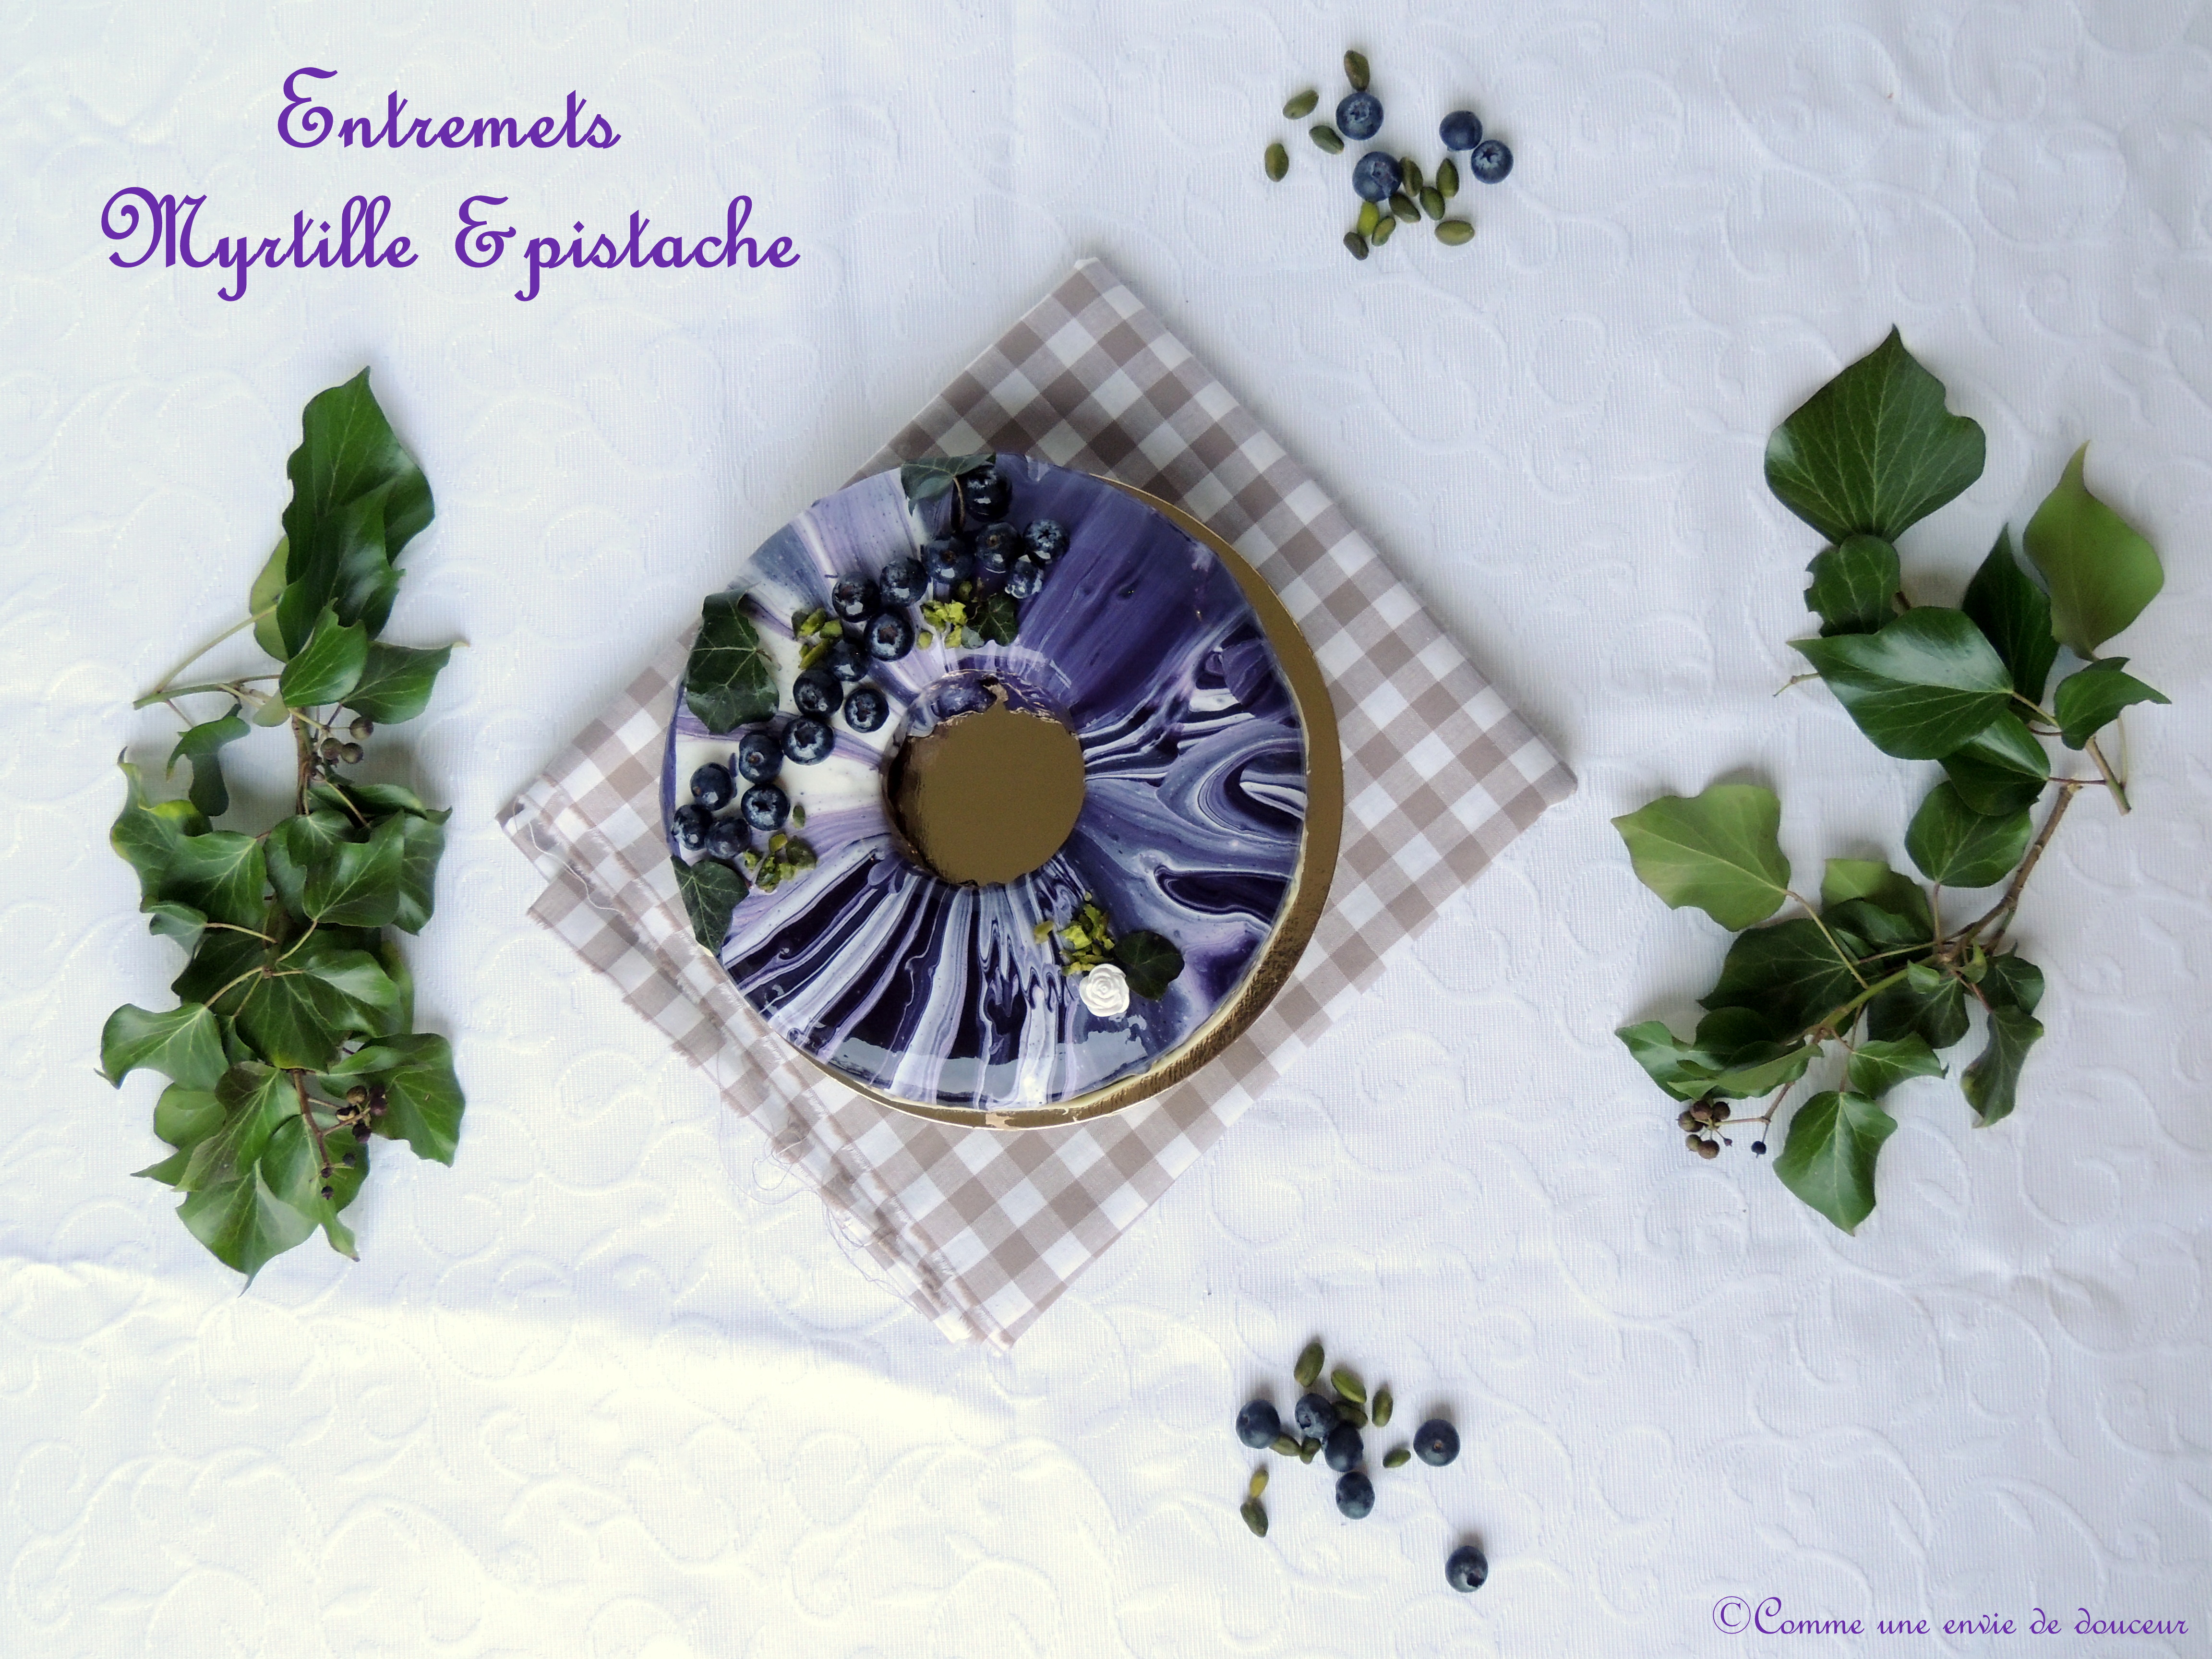 Entremets myrtille & pistache – Blueberry & pistachio dessert